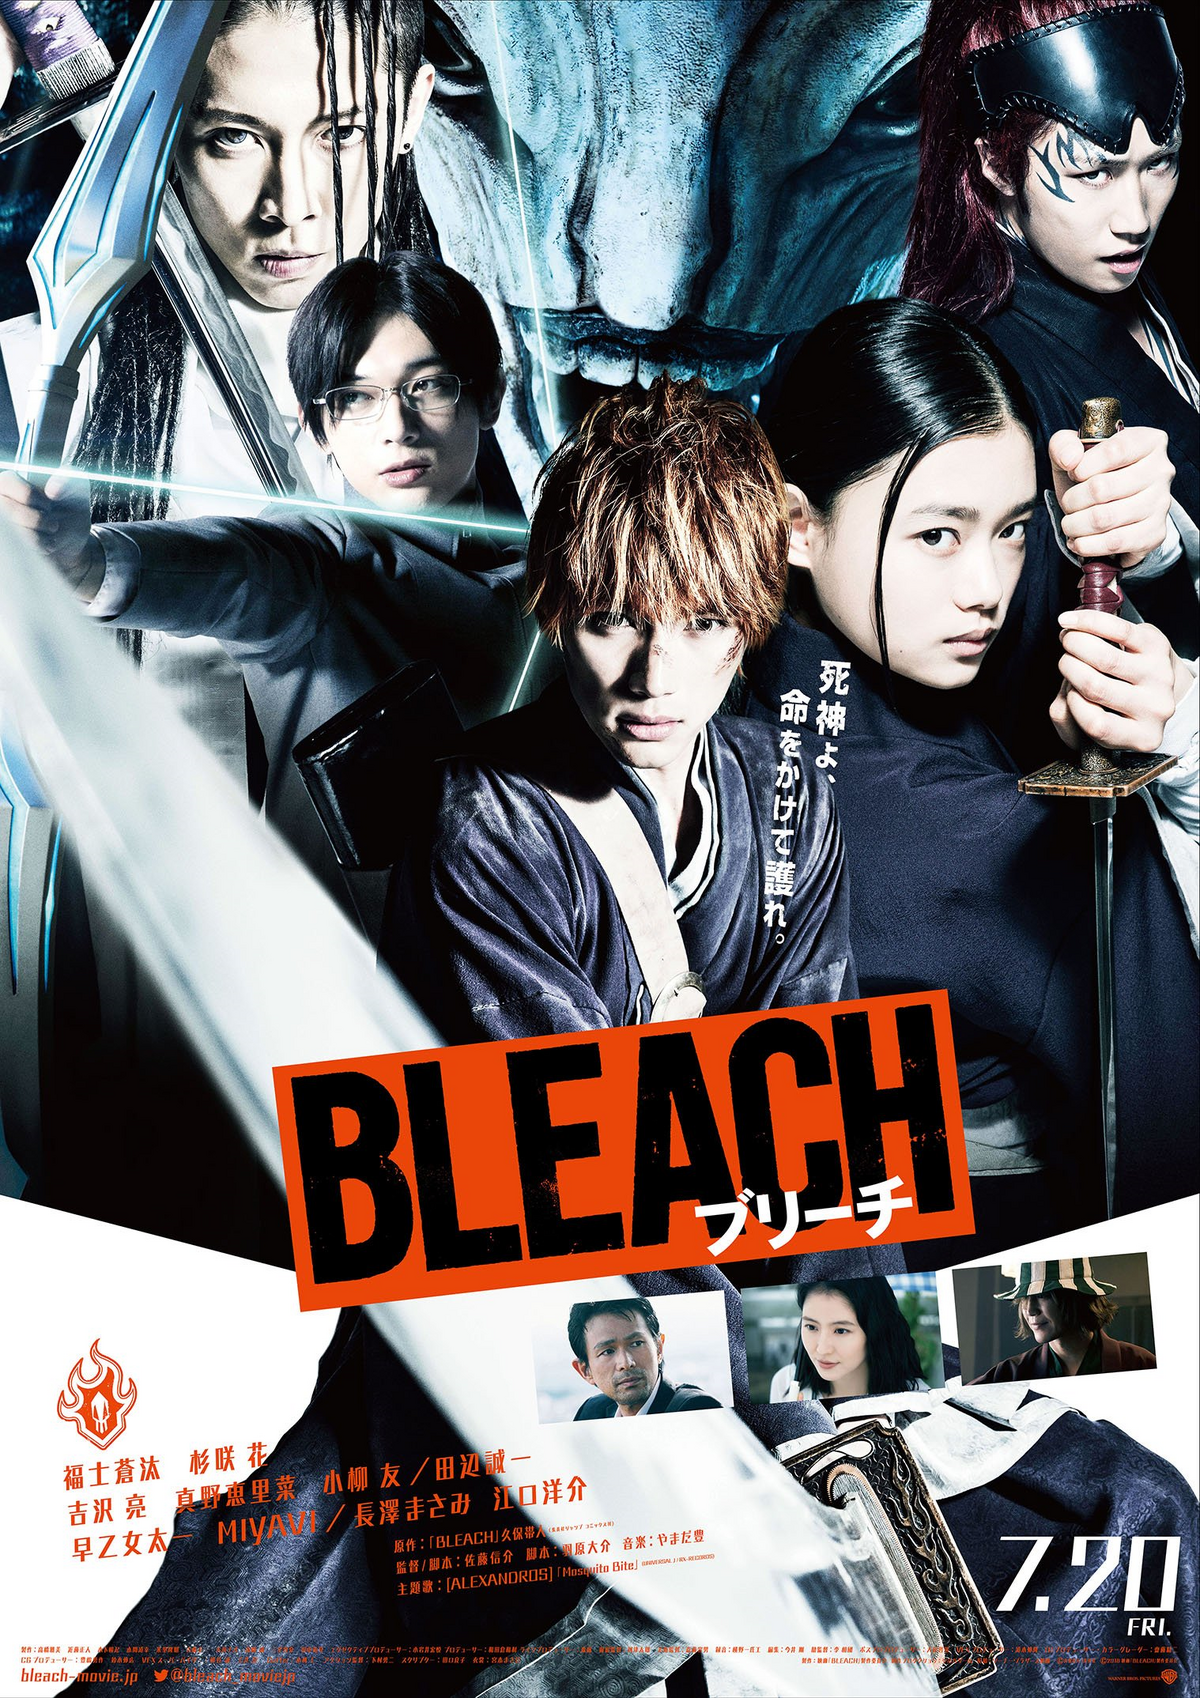 Bleach Fullbring Arc Movie English Sub 